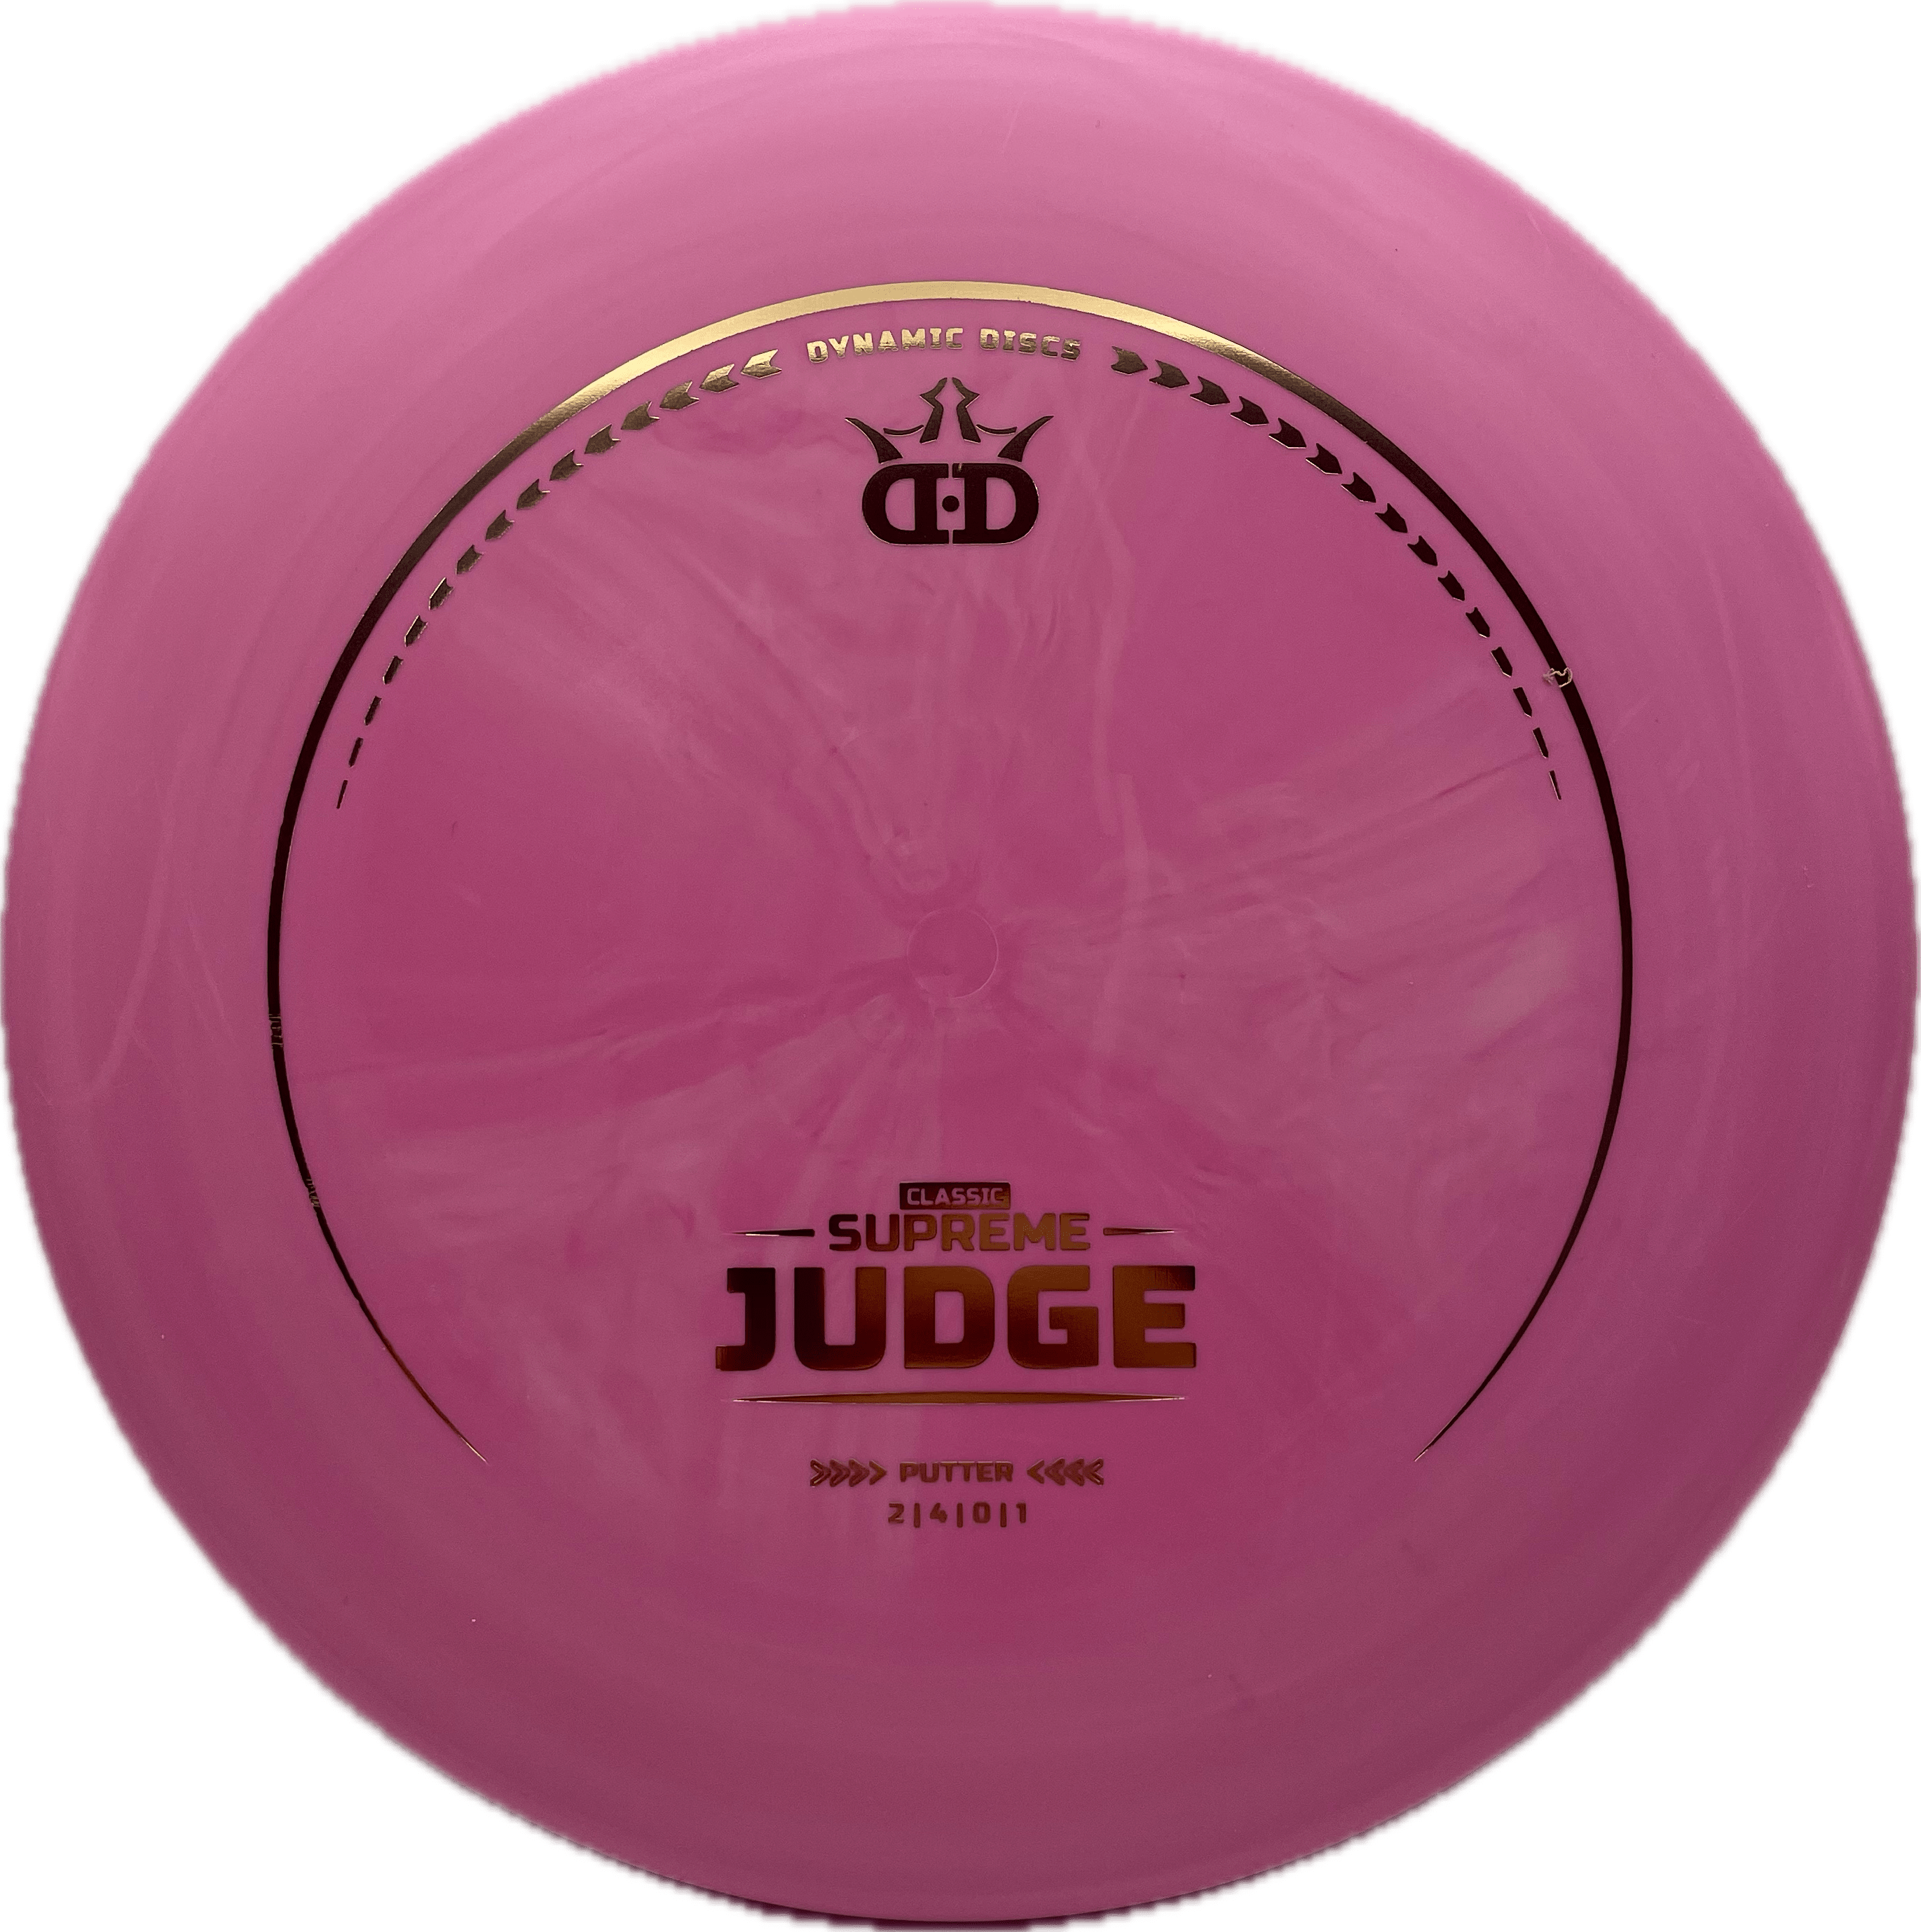 Latitude 64 Disc Dynamic Discs Judge, Supreme, 176, Pink, Gold Metallic